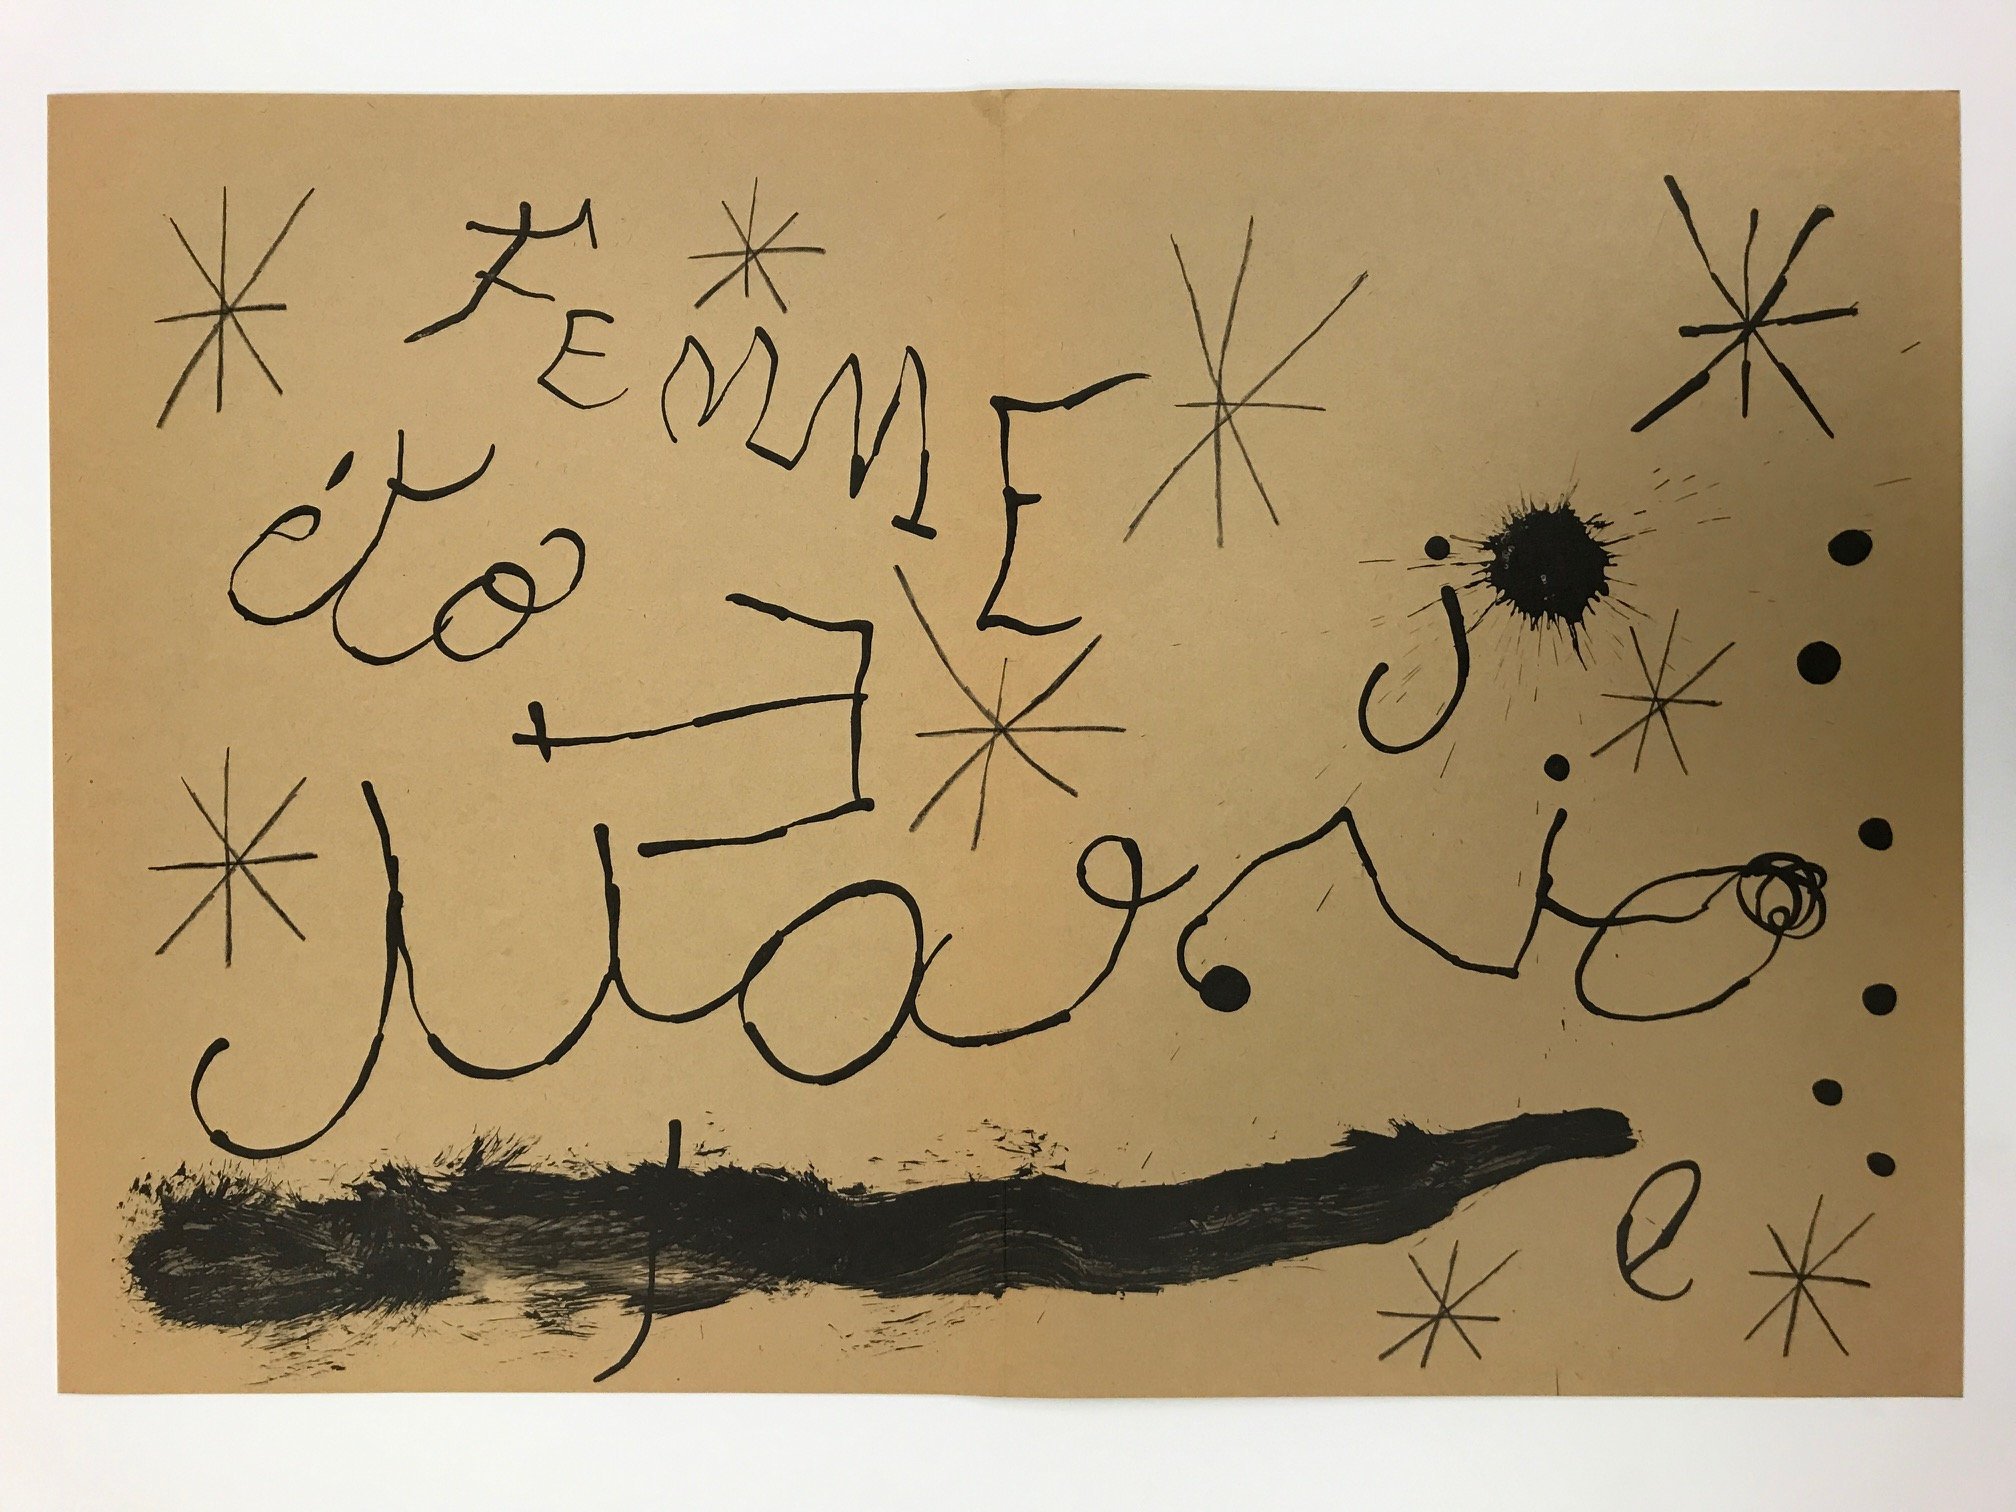 Joan Miro Original Lithograph "DM19151" printed 1970